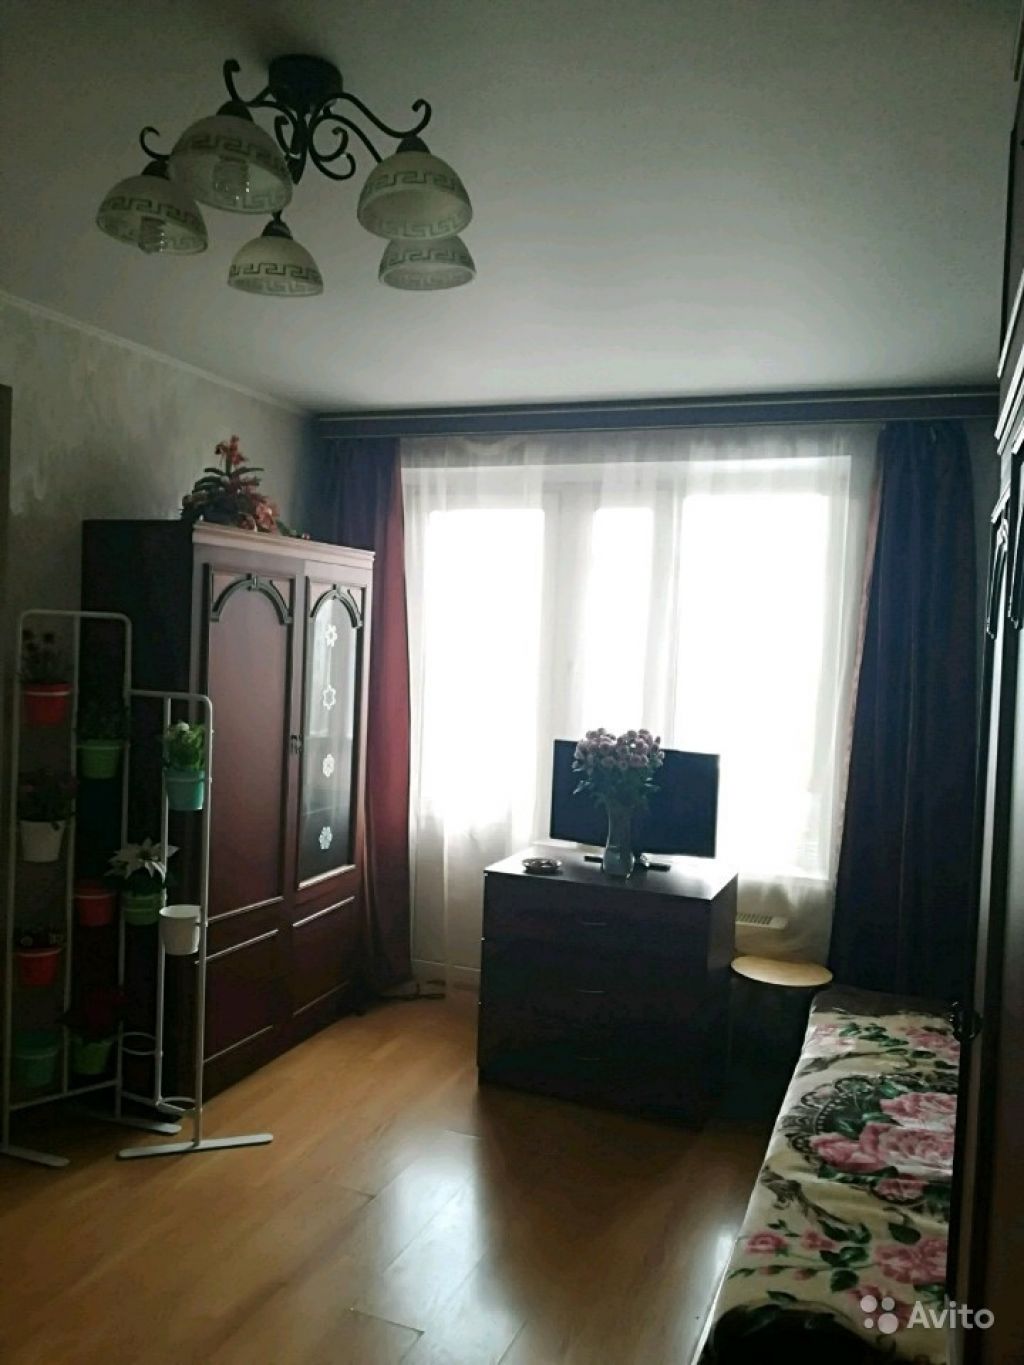 Сдам комнату Комната 22 м² в 2-к квартире на 7 этаже 12-этажного блочного дома в Москве. Фото 1